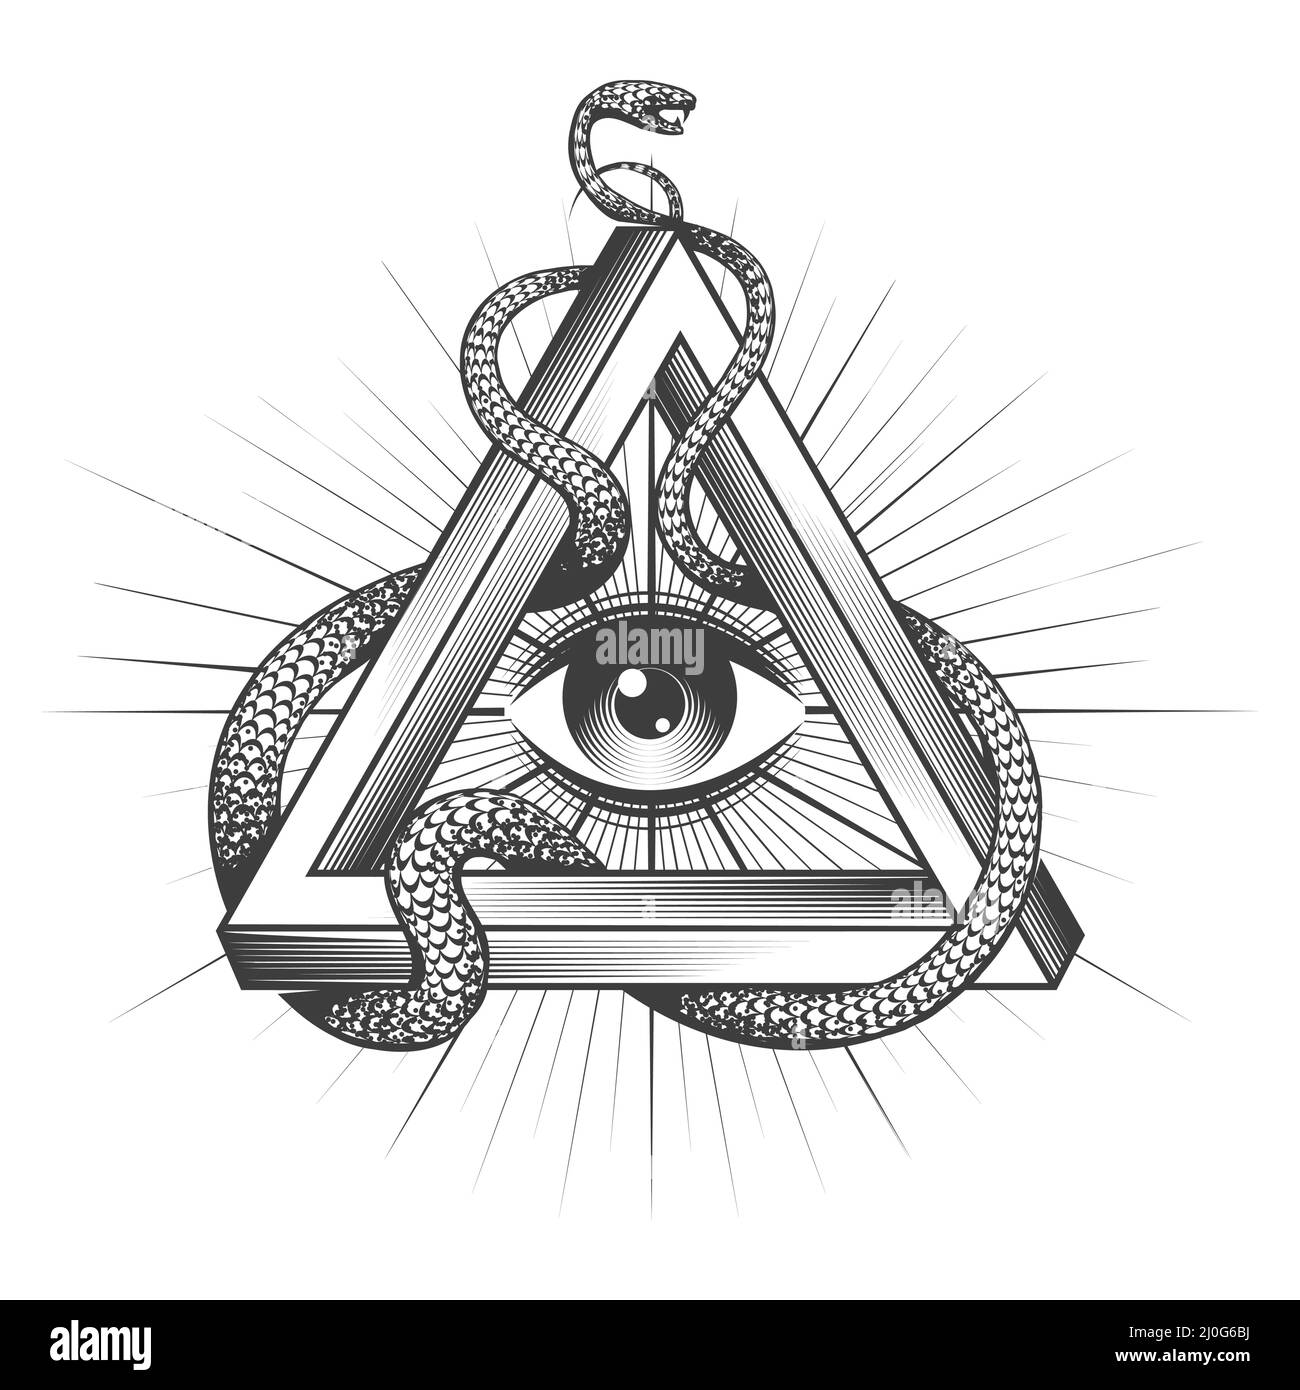 Tatuaggio di Masonic All Seeing Eye dentro Triangolo con serpente di saggezza isolato su bianco. Illustrazione vettoriale. Illustrazione Vettoriale